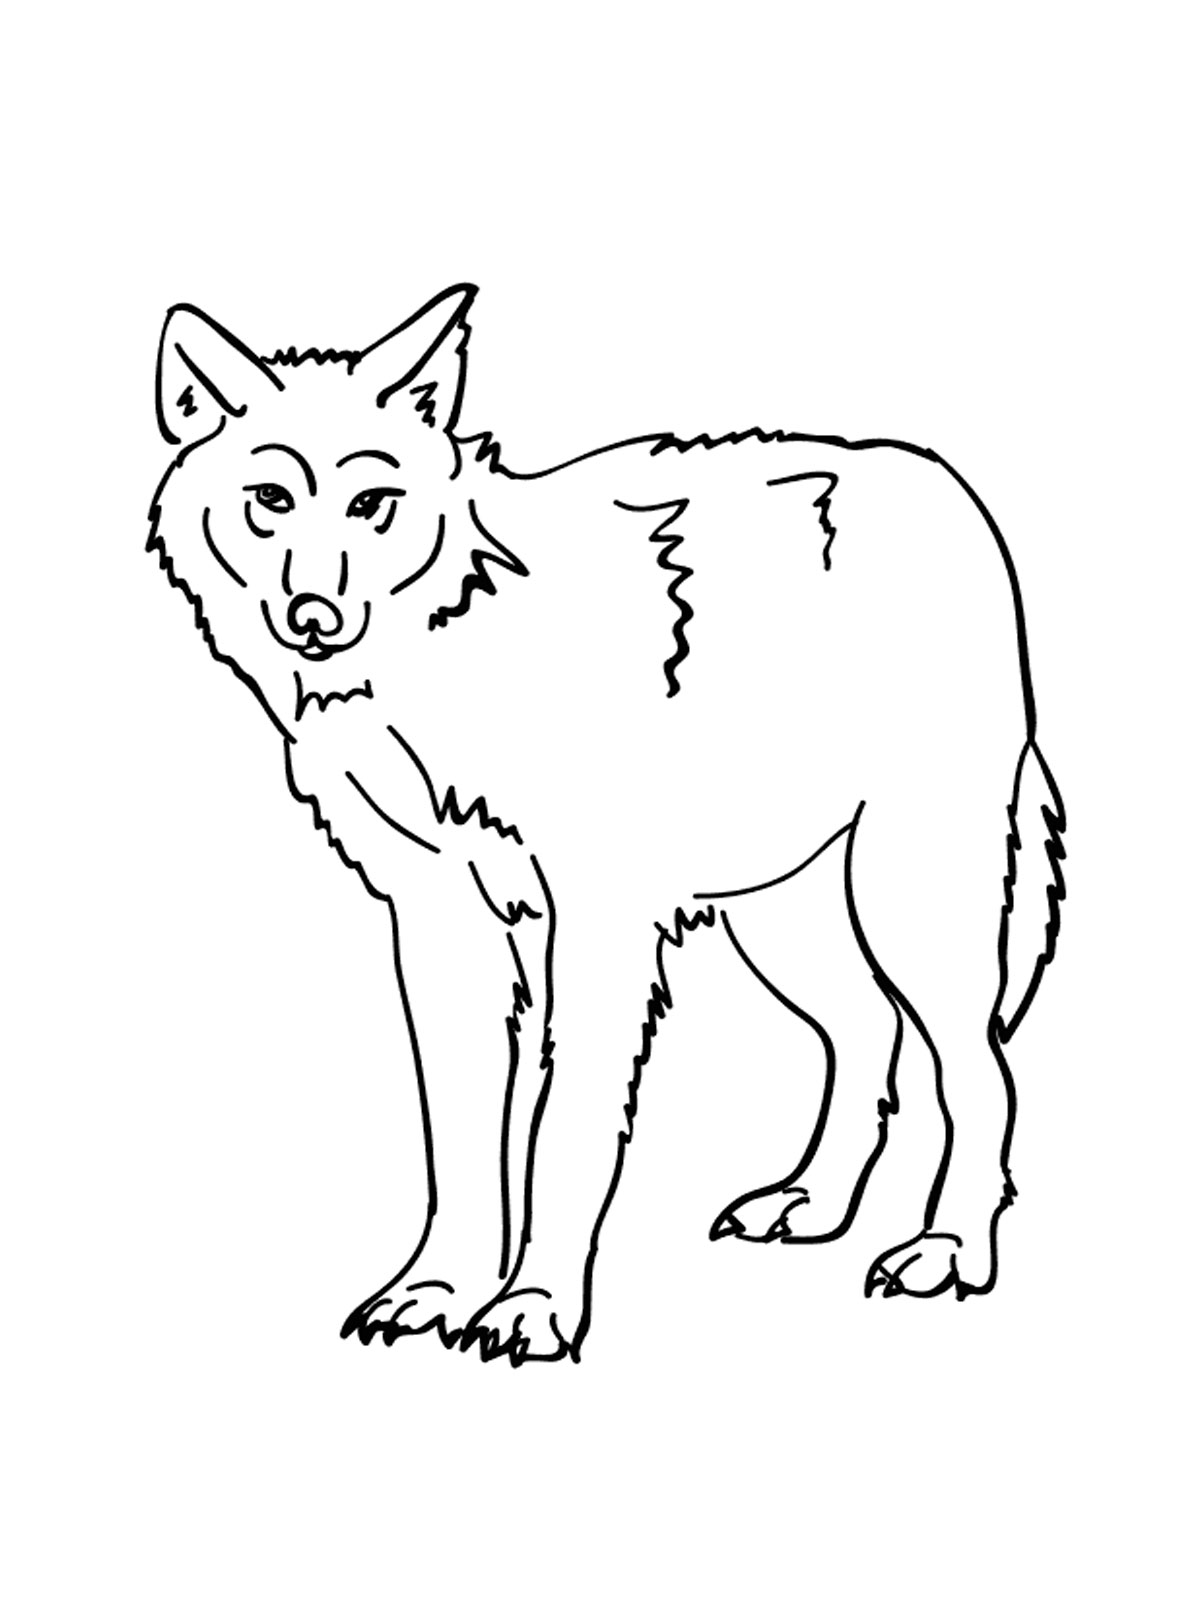 Распечатать раскраску дикие животные. Раскраска волк. Волк картинка для детей раскраска. Раскраска Волга. Раскраска "Дикие животные".